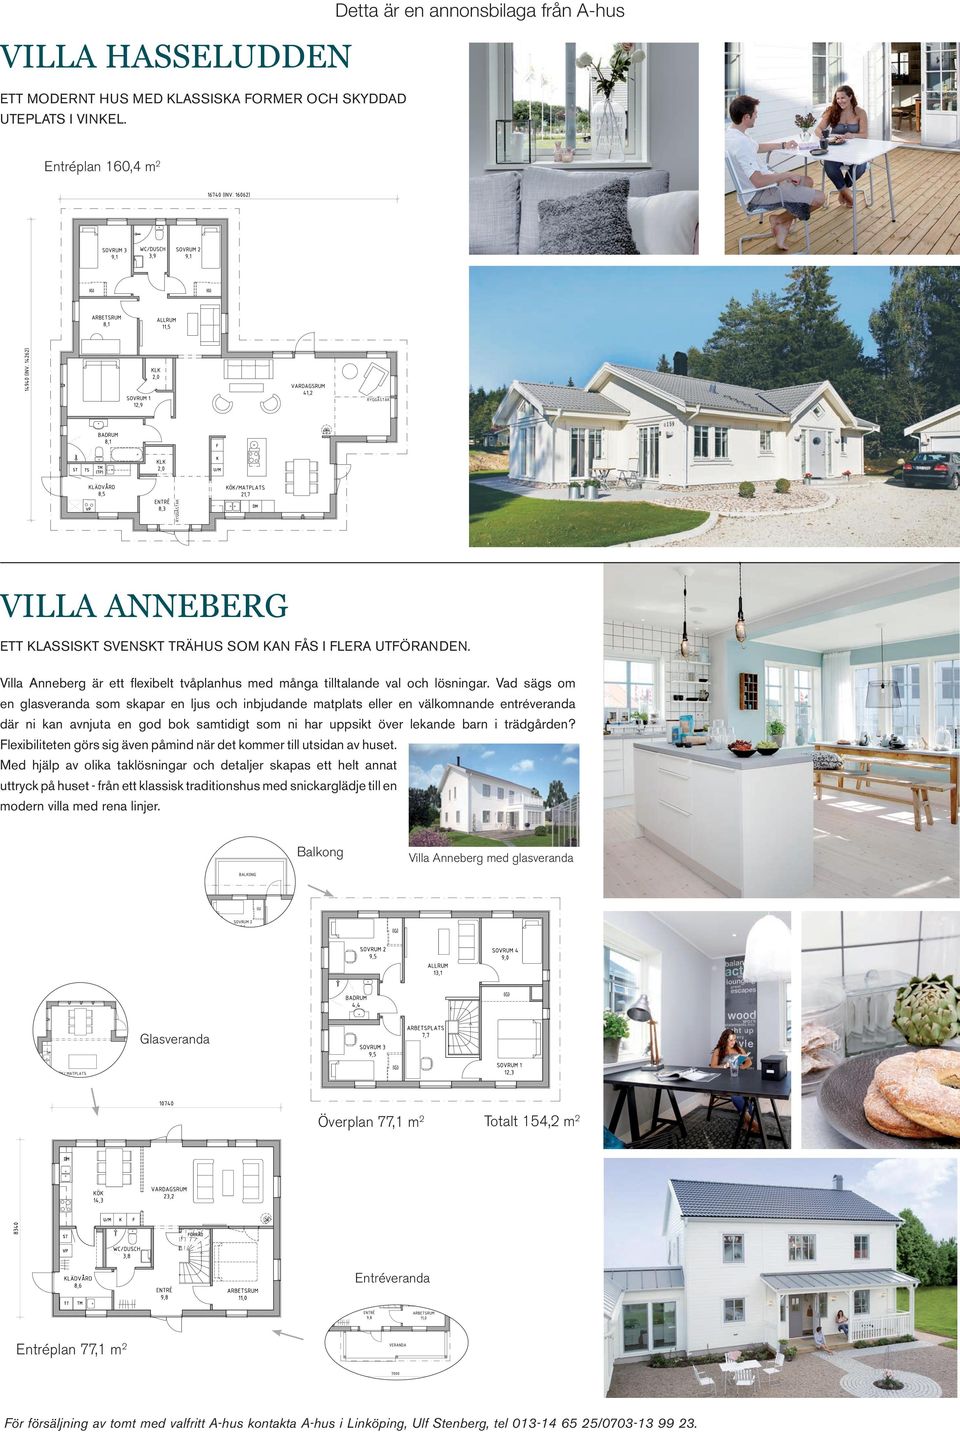 Villa Anneberg är ett flexibelt tvåplanhus med många tilltalande val och lösningar.